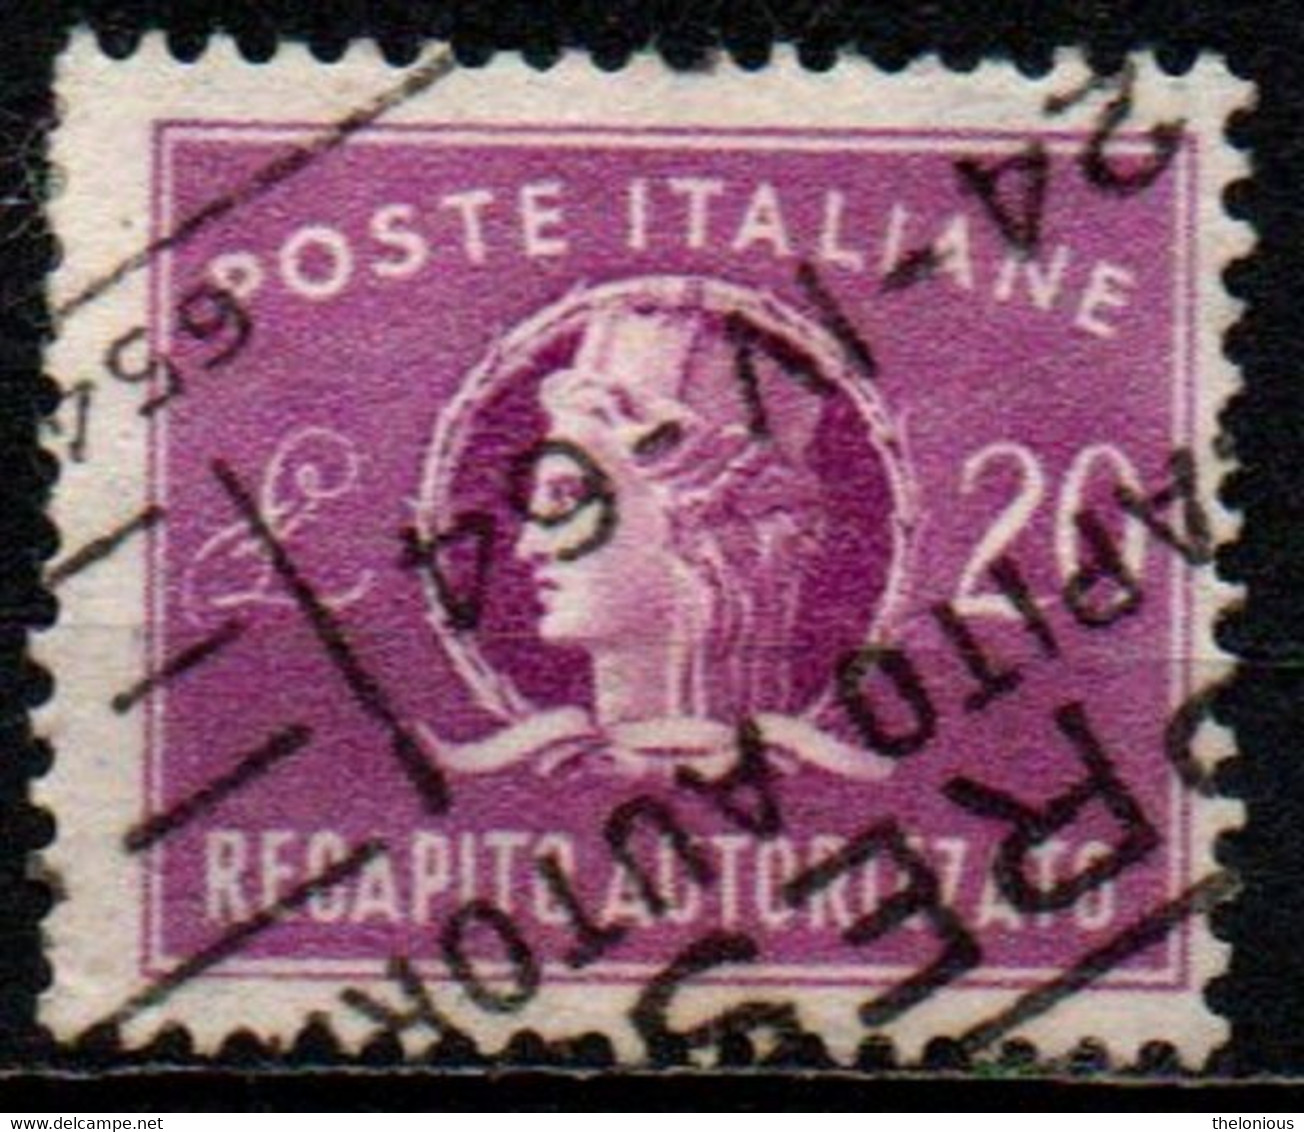 # 1955 Italia Repubblica Recapito Autorizzato Da Lire 20 Usato Filigrana Stelle - Taxe